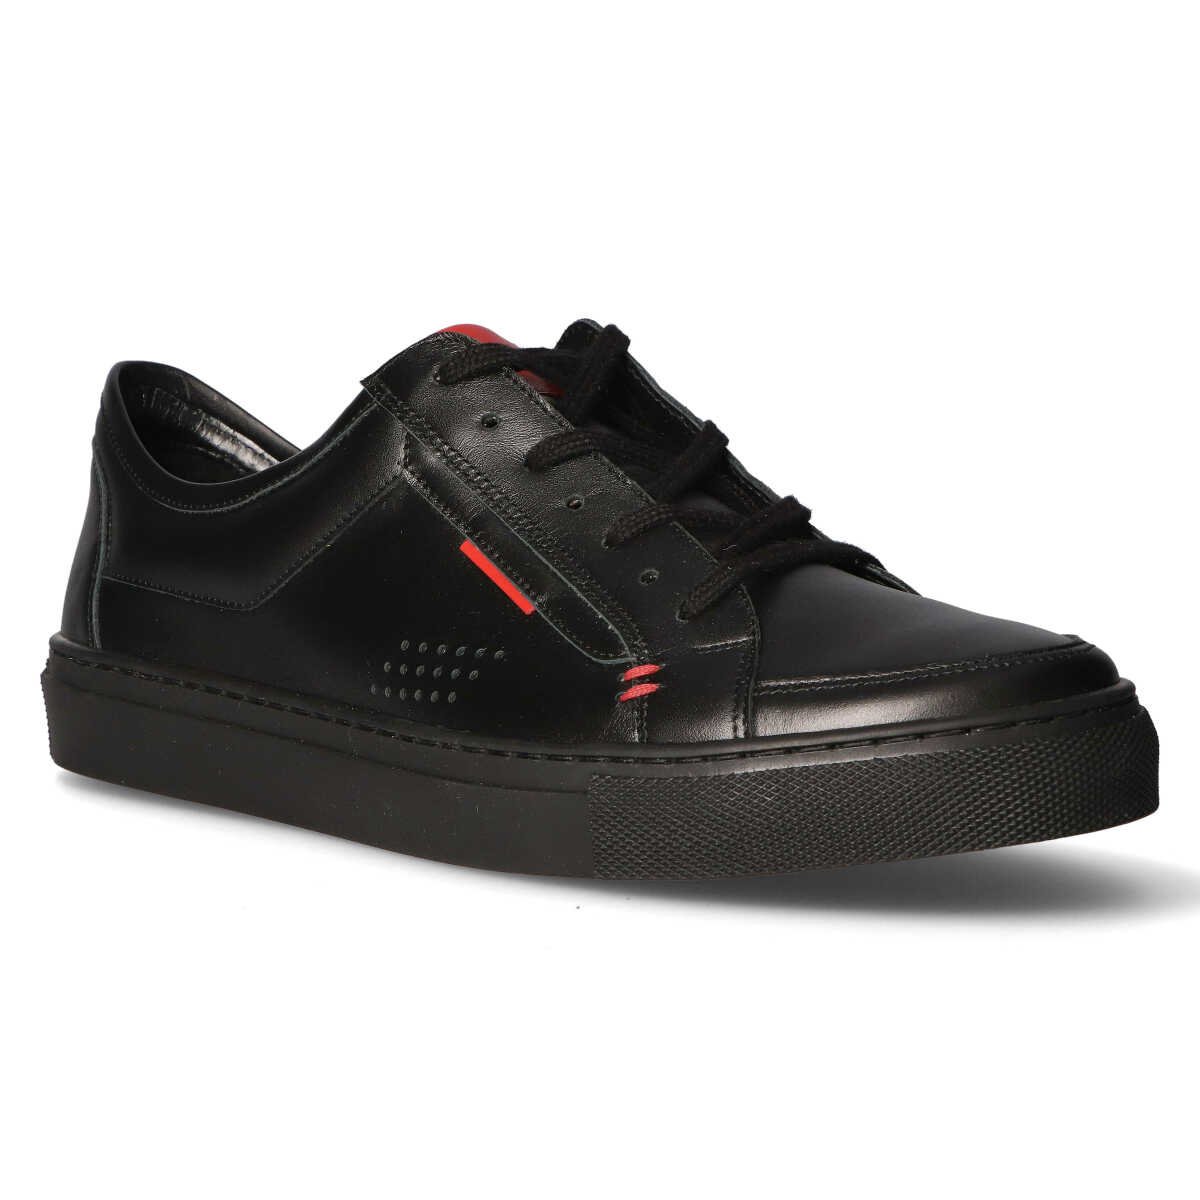 Filippo shoes 2009-203 Black black | SALE \ Men's outlet shoes \ Shoes ...